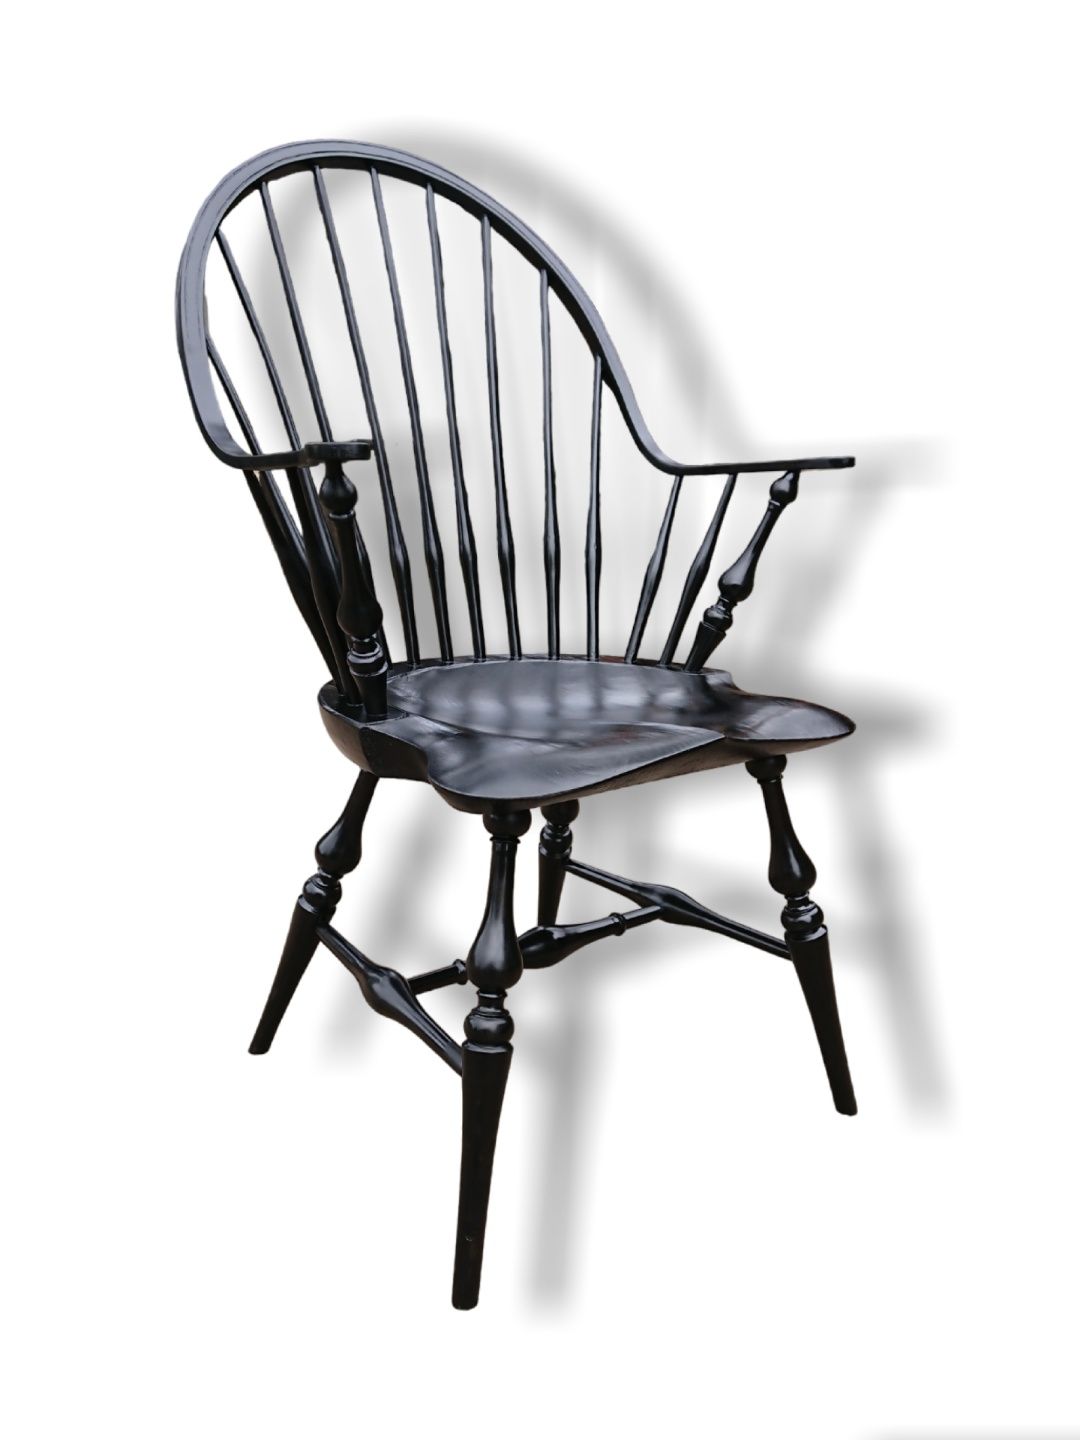 Стілець стул стільчик крісло Windsor. Класичний американський дизайн